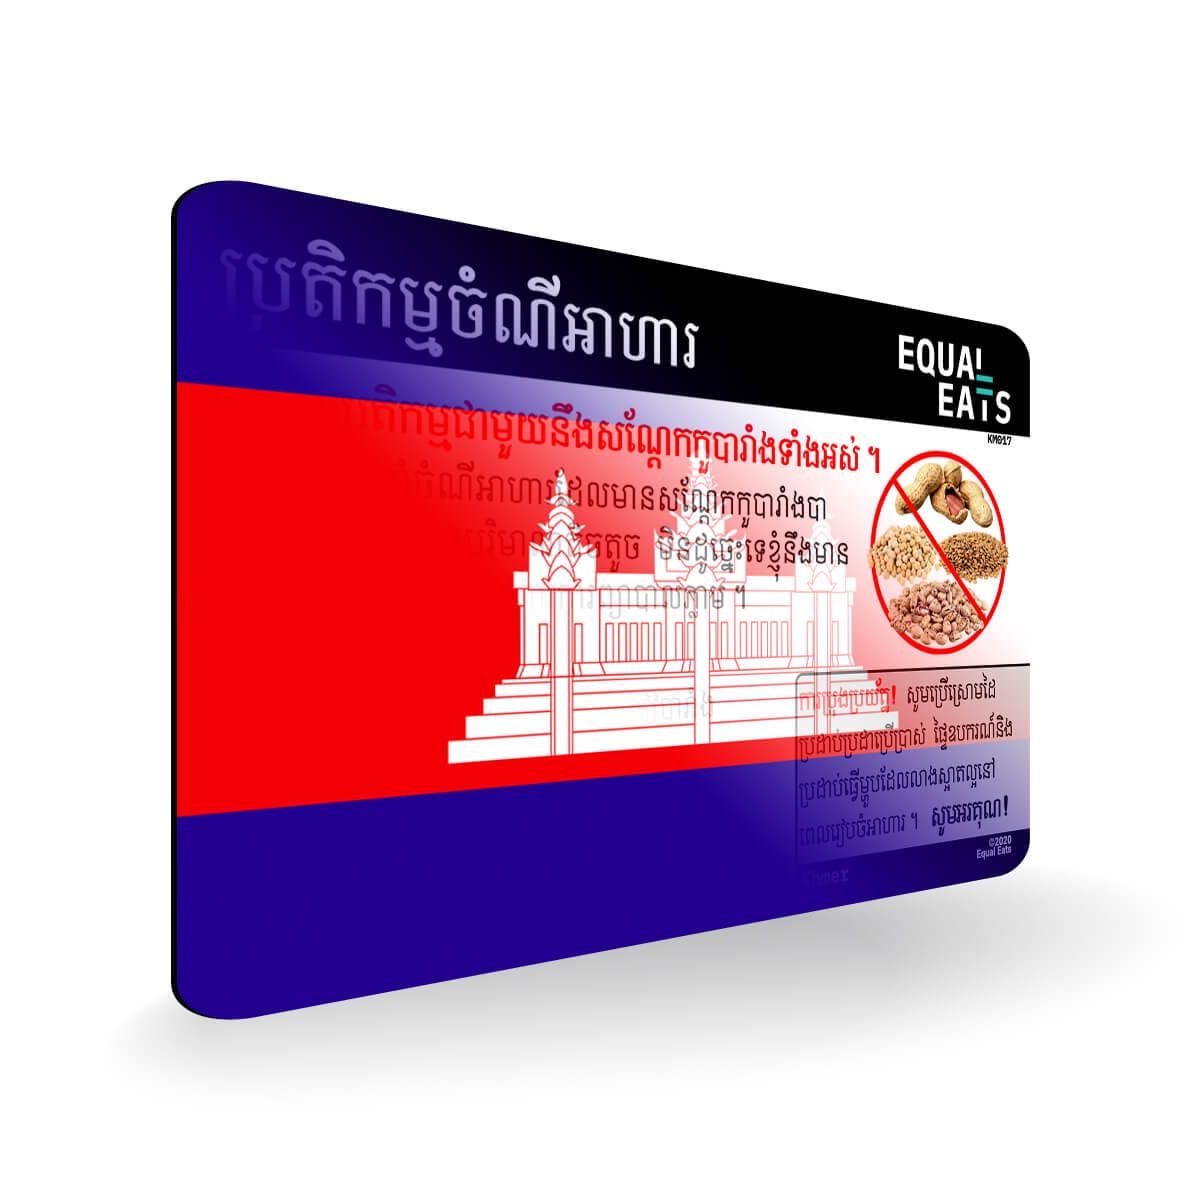 Legume Allergy in Khmer. Legume Allergy Card for Cambodia